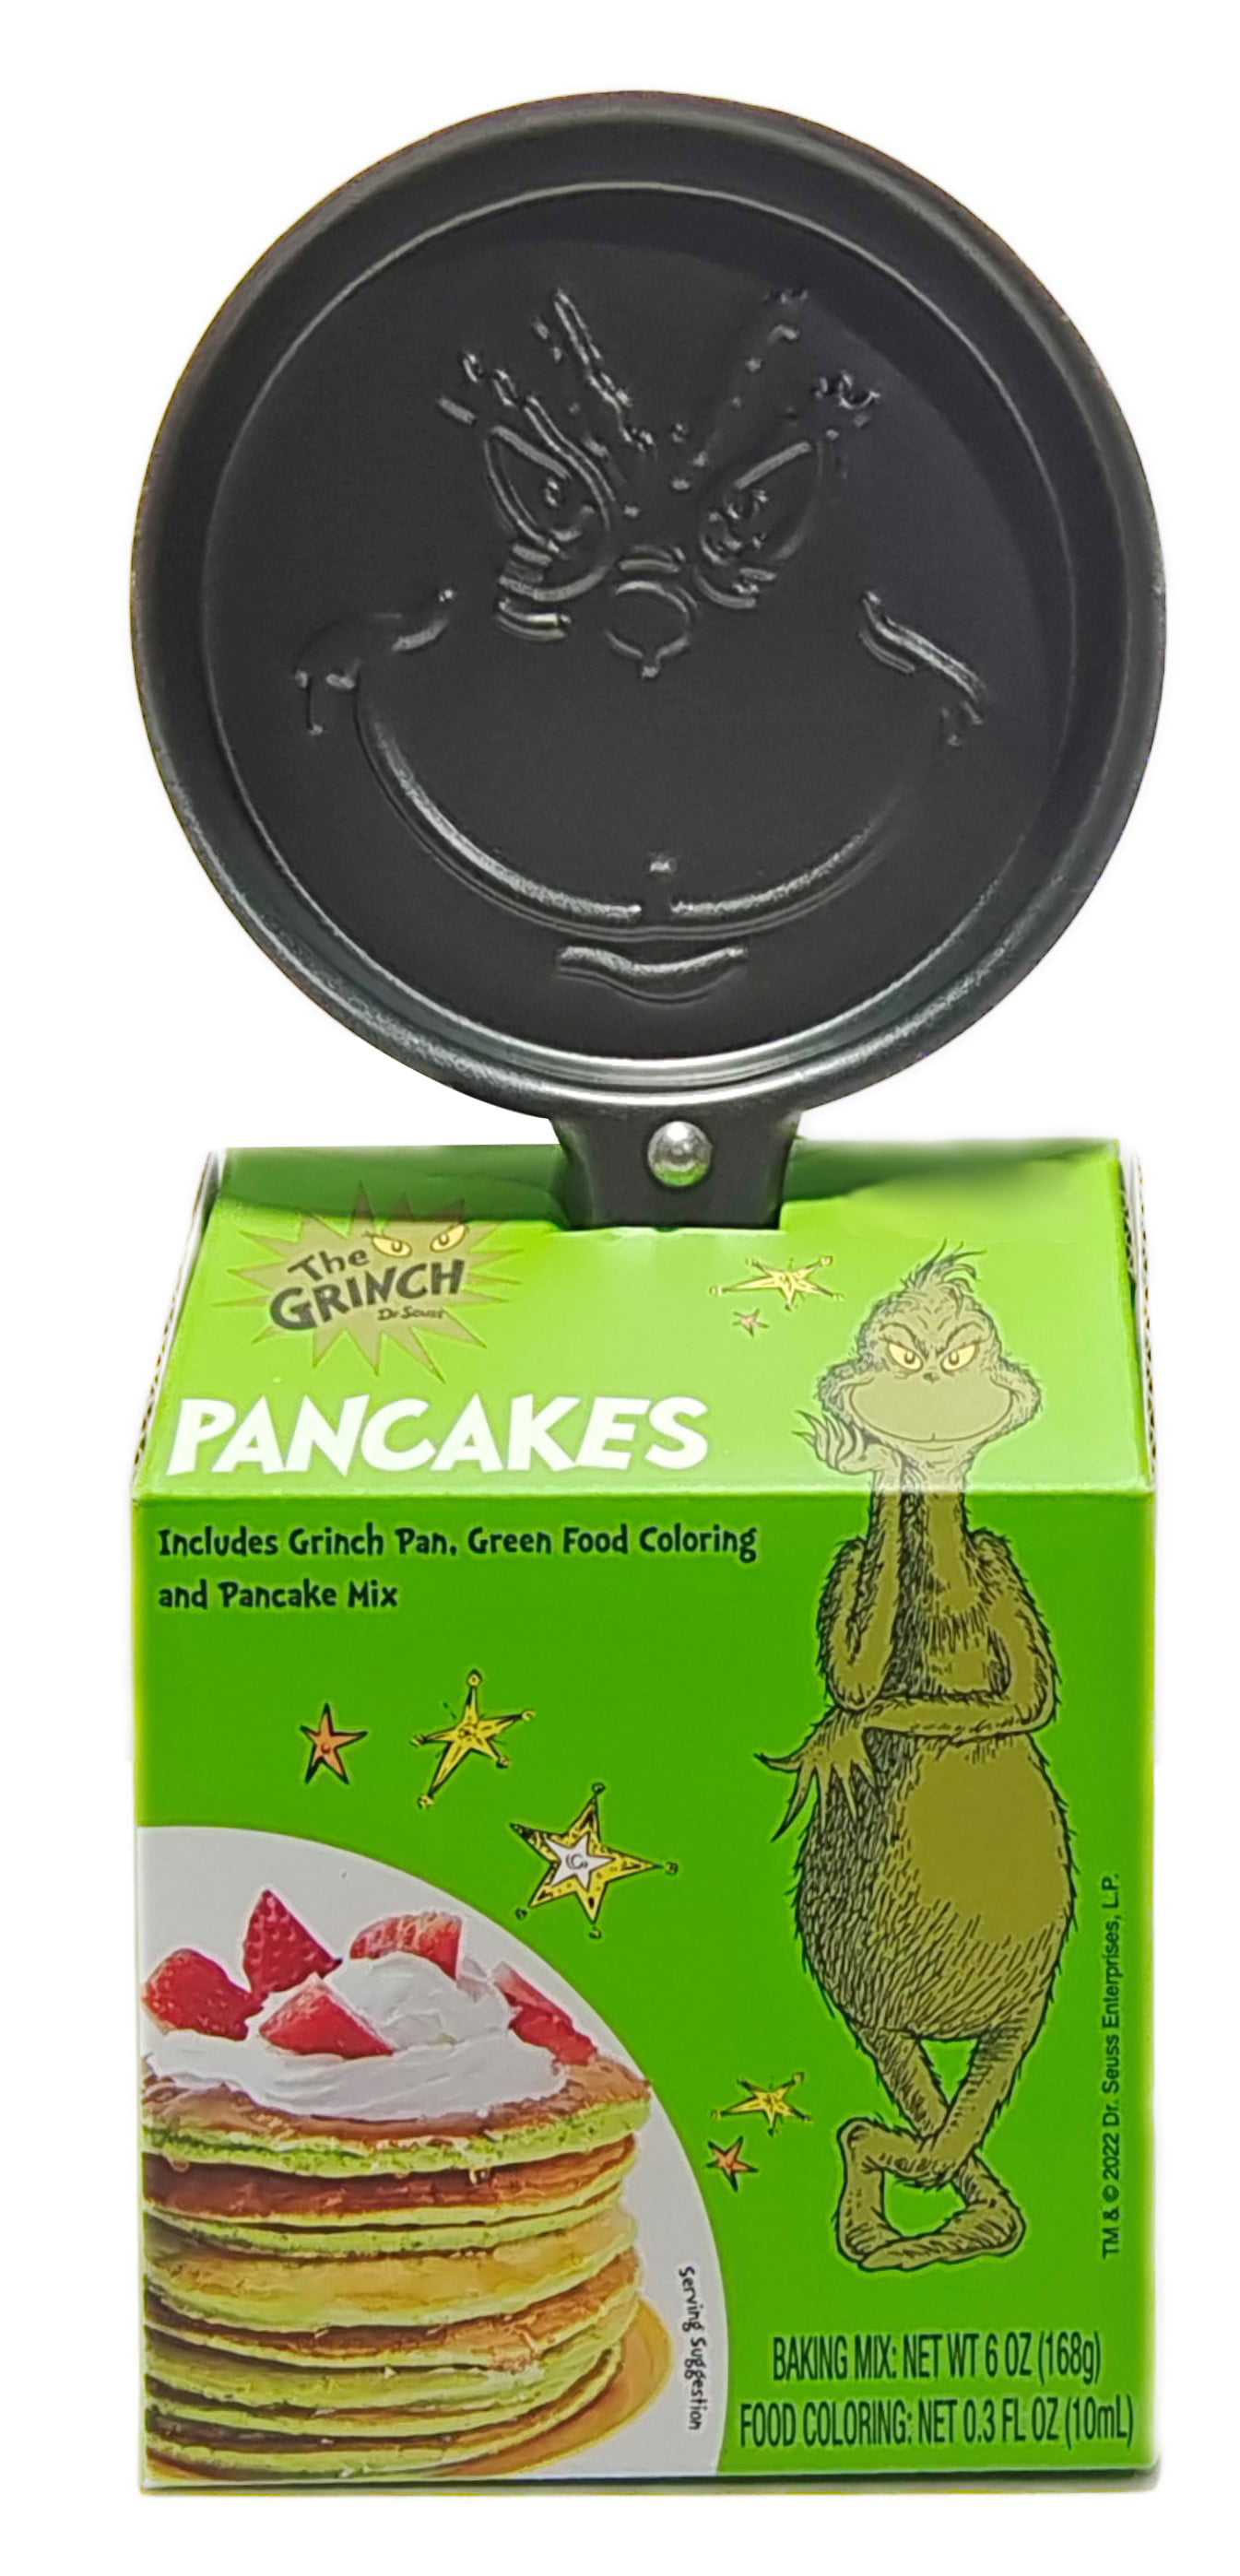 Grinch pancake skillet｜TikTok Search